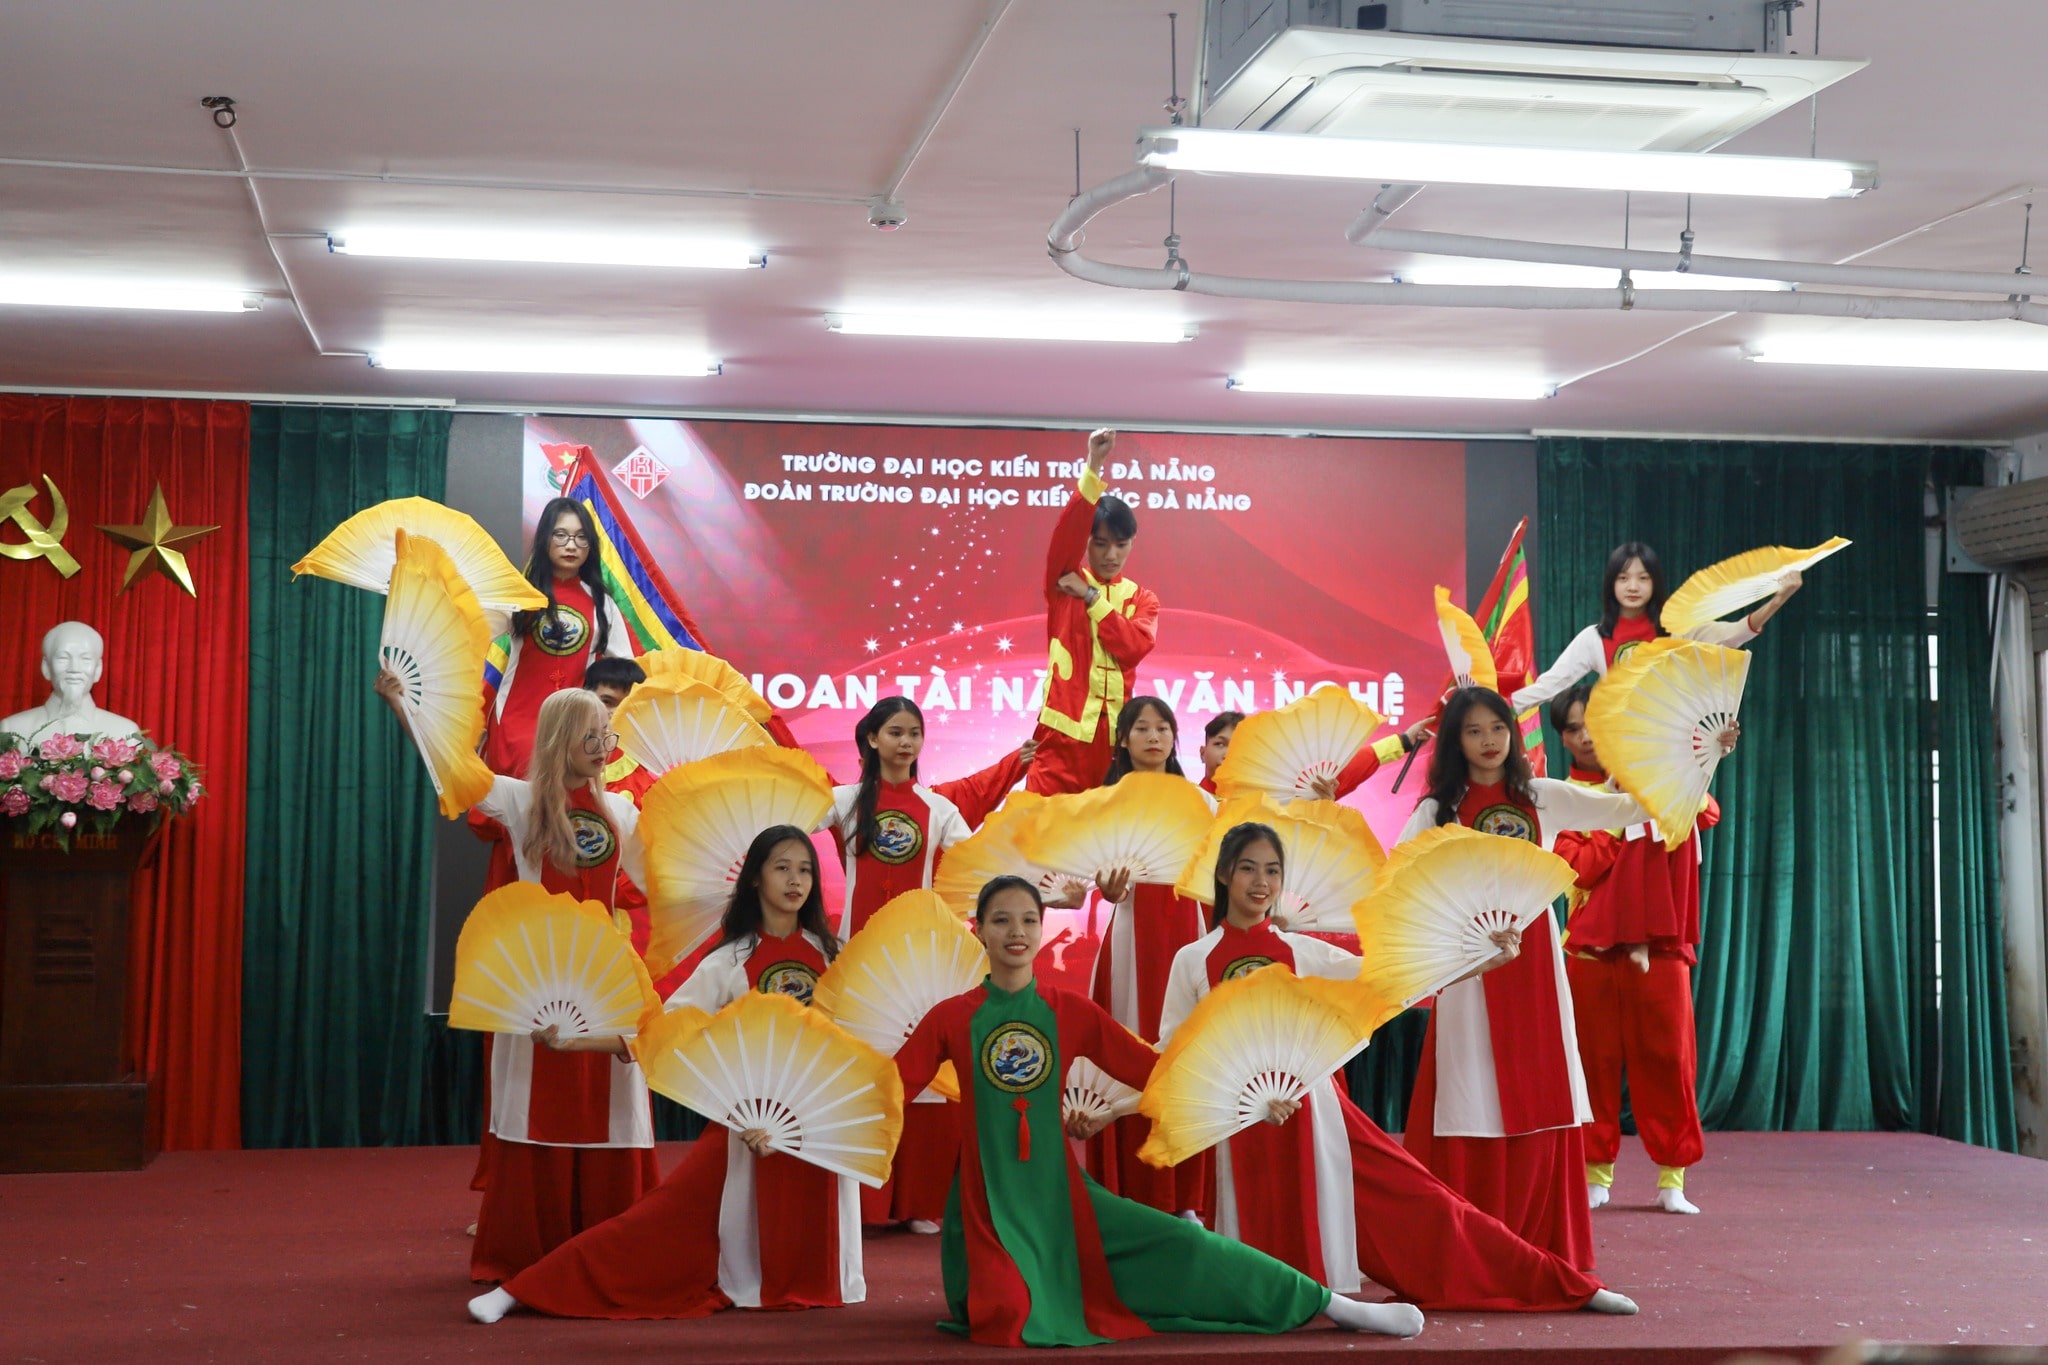 Hoạt động chào mừng kỷ niệm 40 năm ngày Nhà giáo Việt Nam , Kỷ niệm 16 năm thành lập Trường Đại học Kiến Trúc Đà Nẵng và Chào đón Tân Sinh viên năm học 2022 – 2023